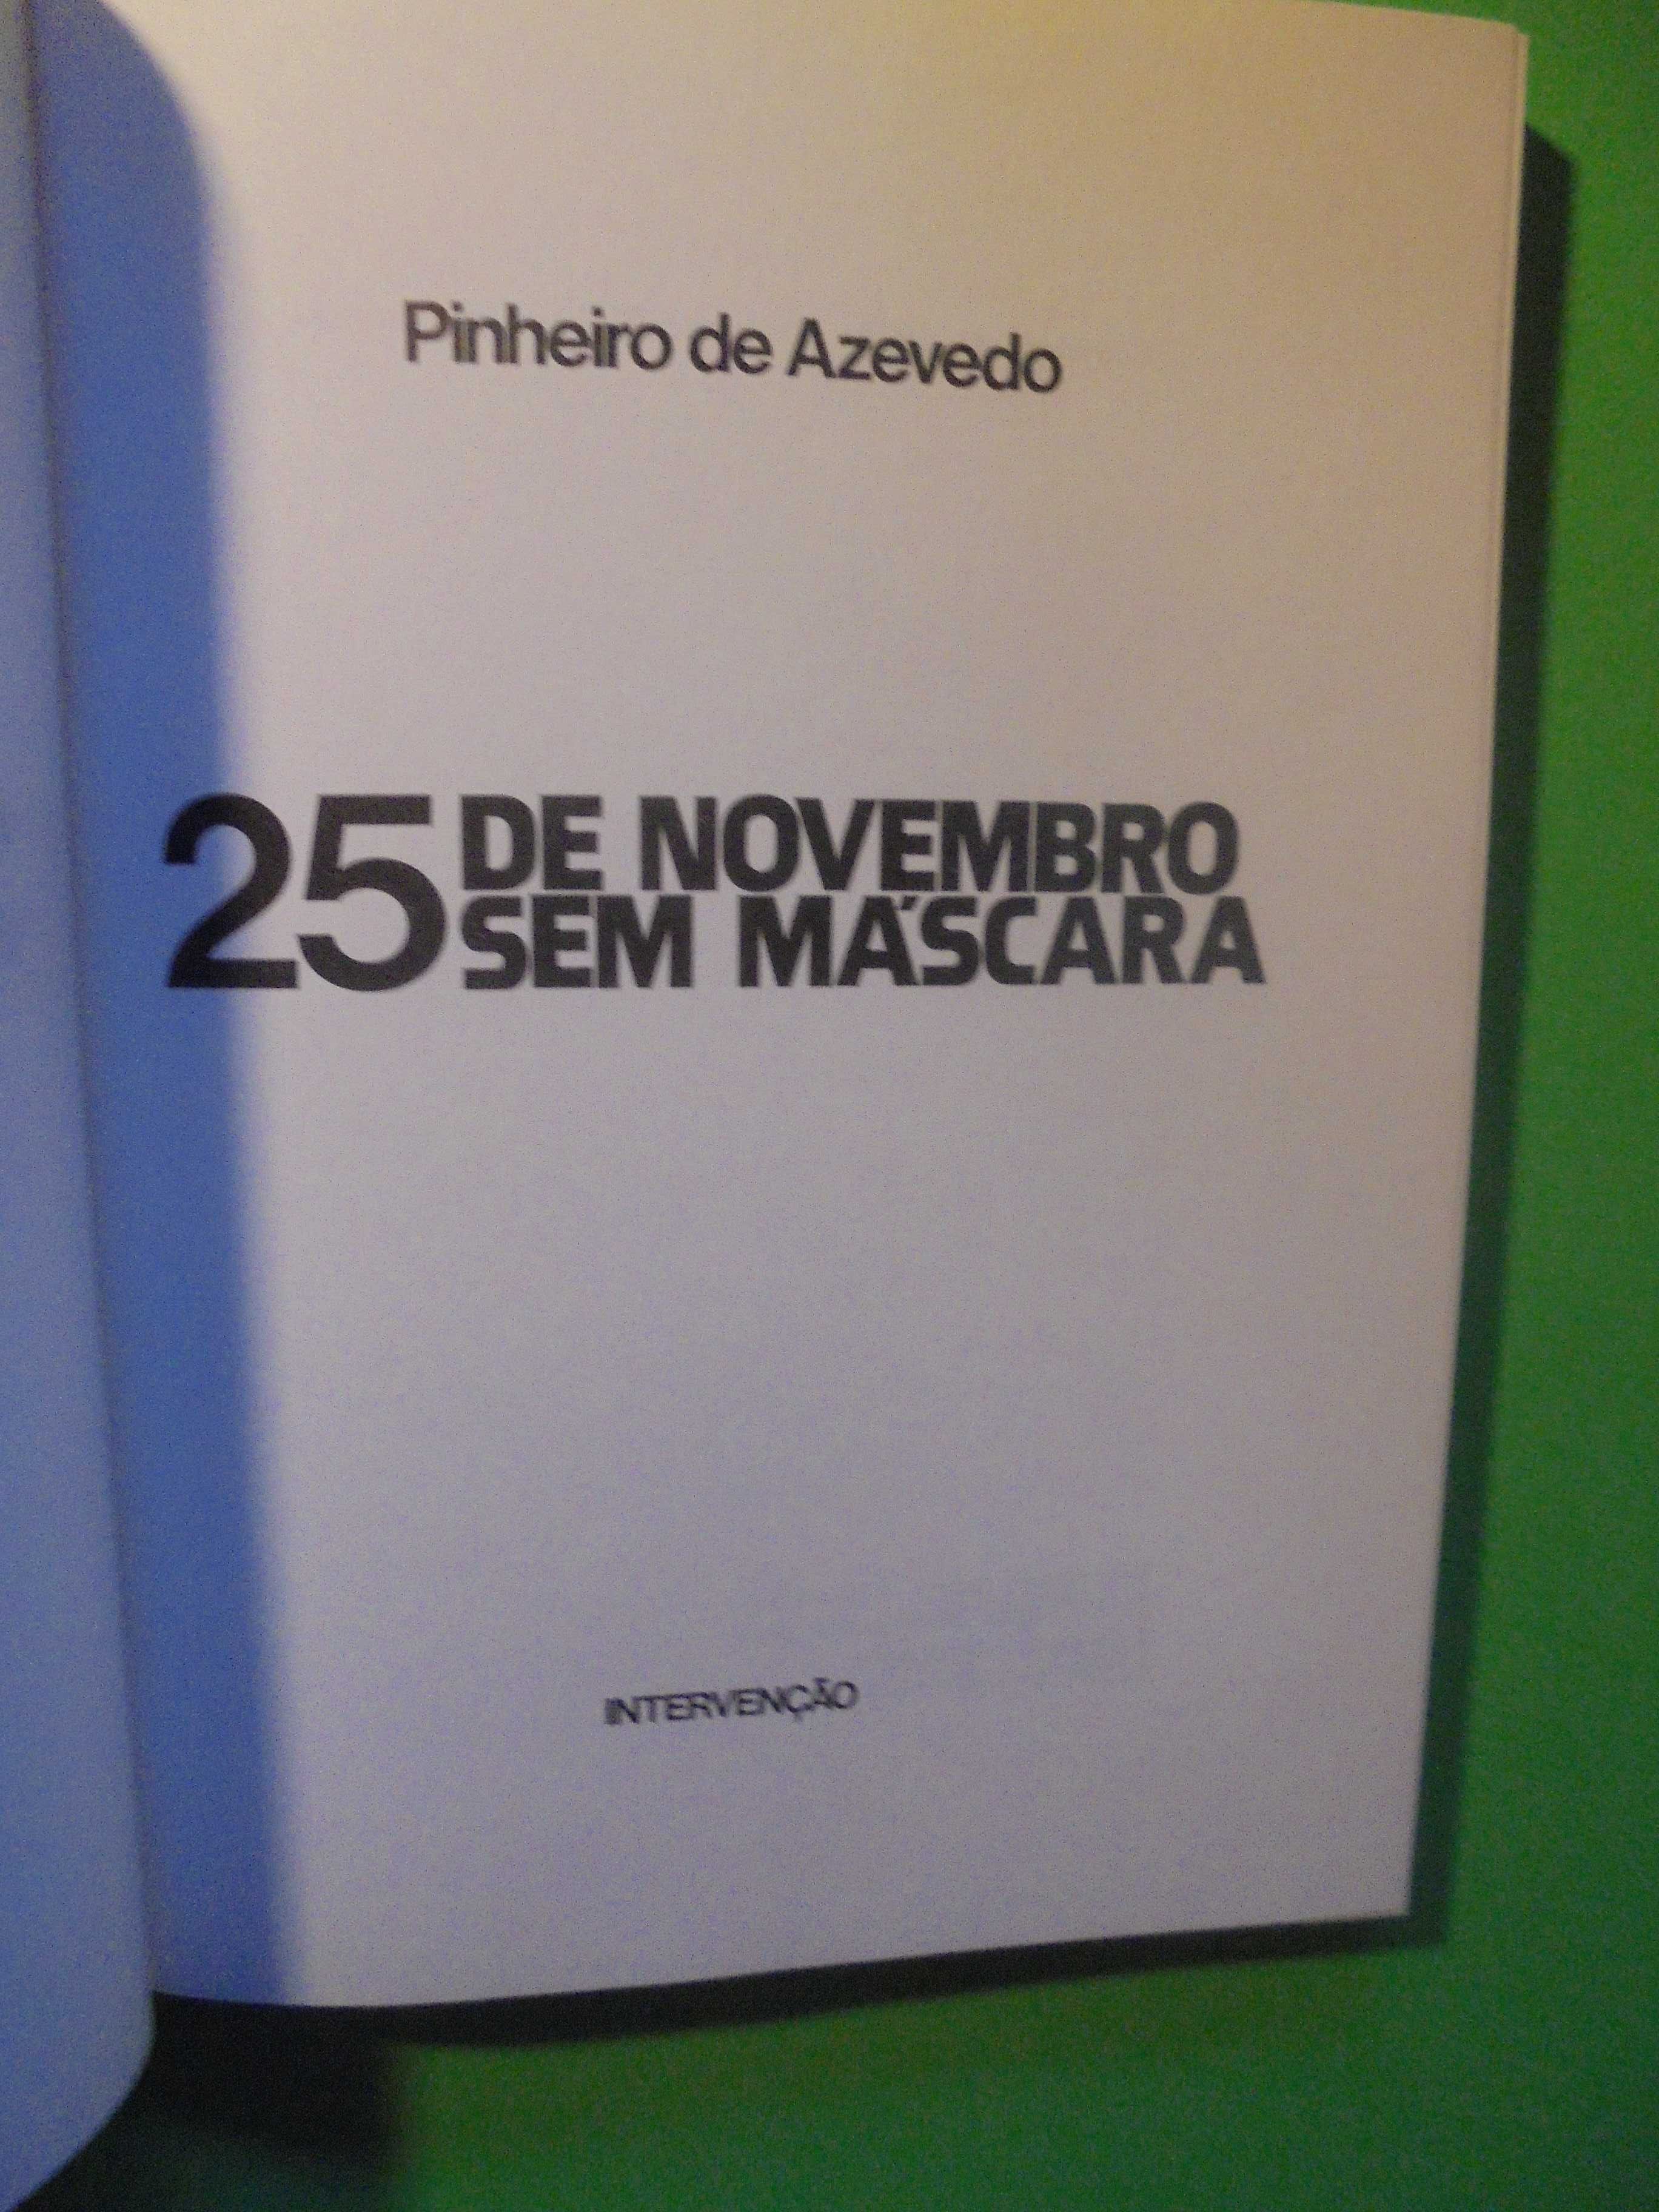 Azevedo (Pinheiro de);25 de Novembro sem Máscara;